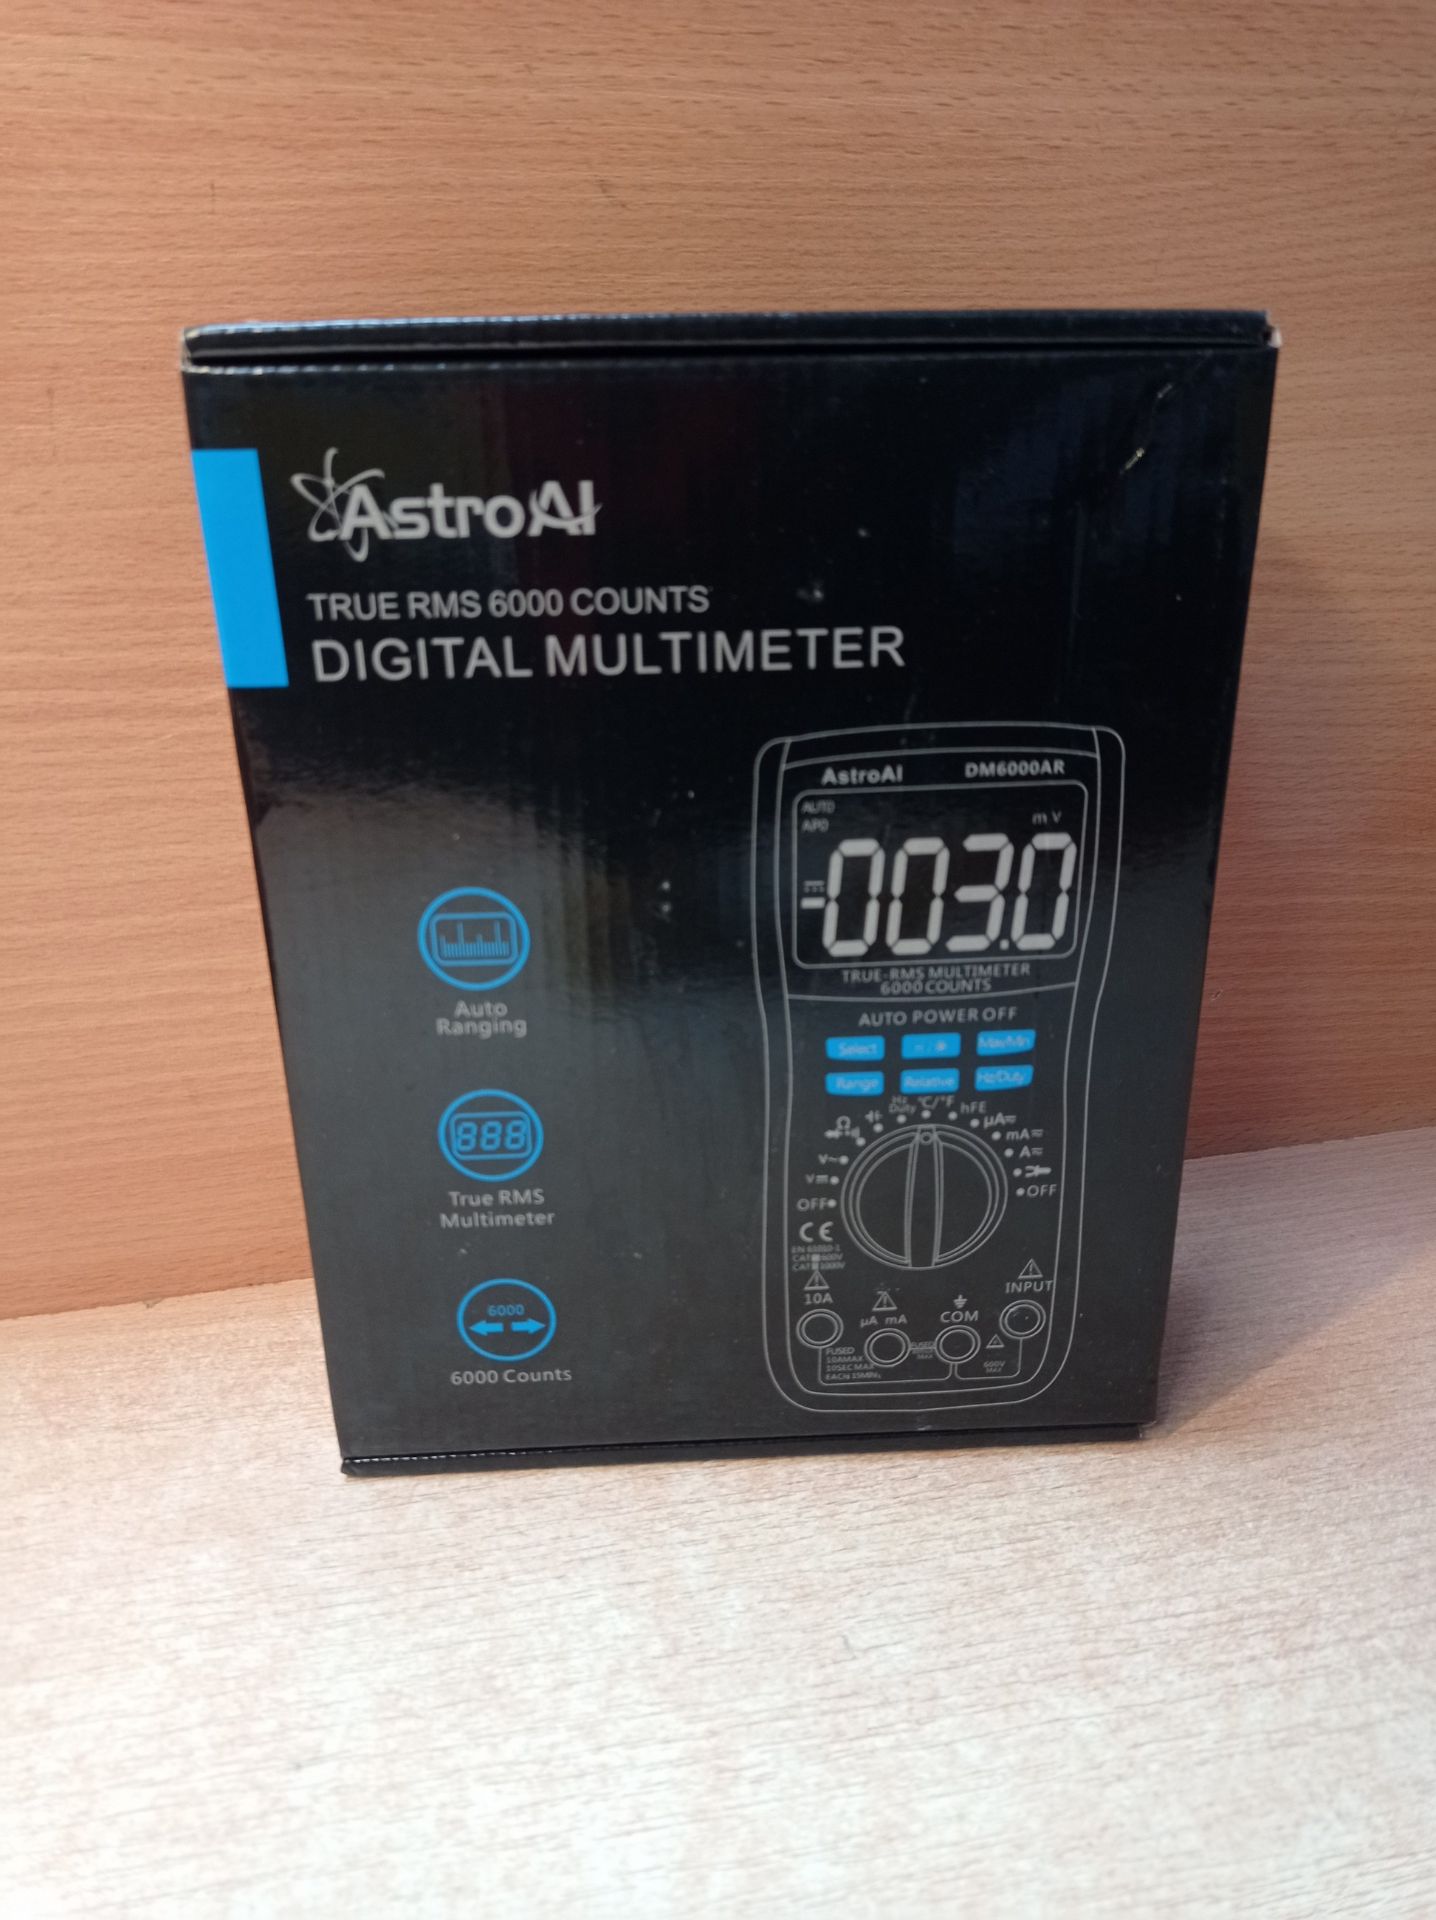 RRP £27.39 AstroAI Digital Multimeter - Image 2 of 2